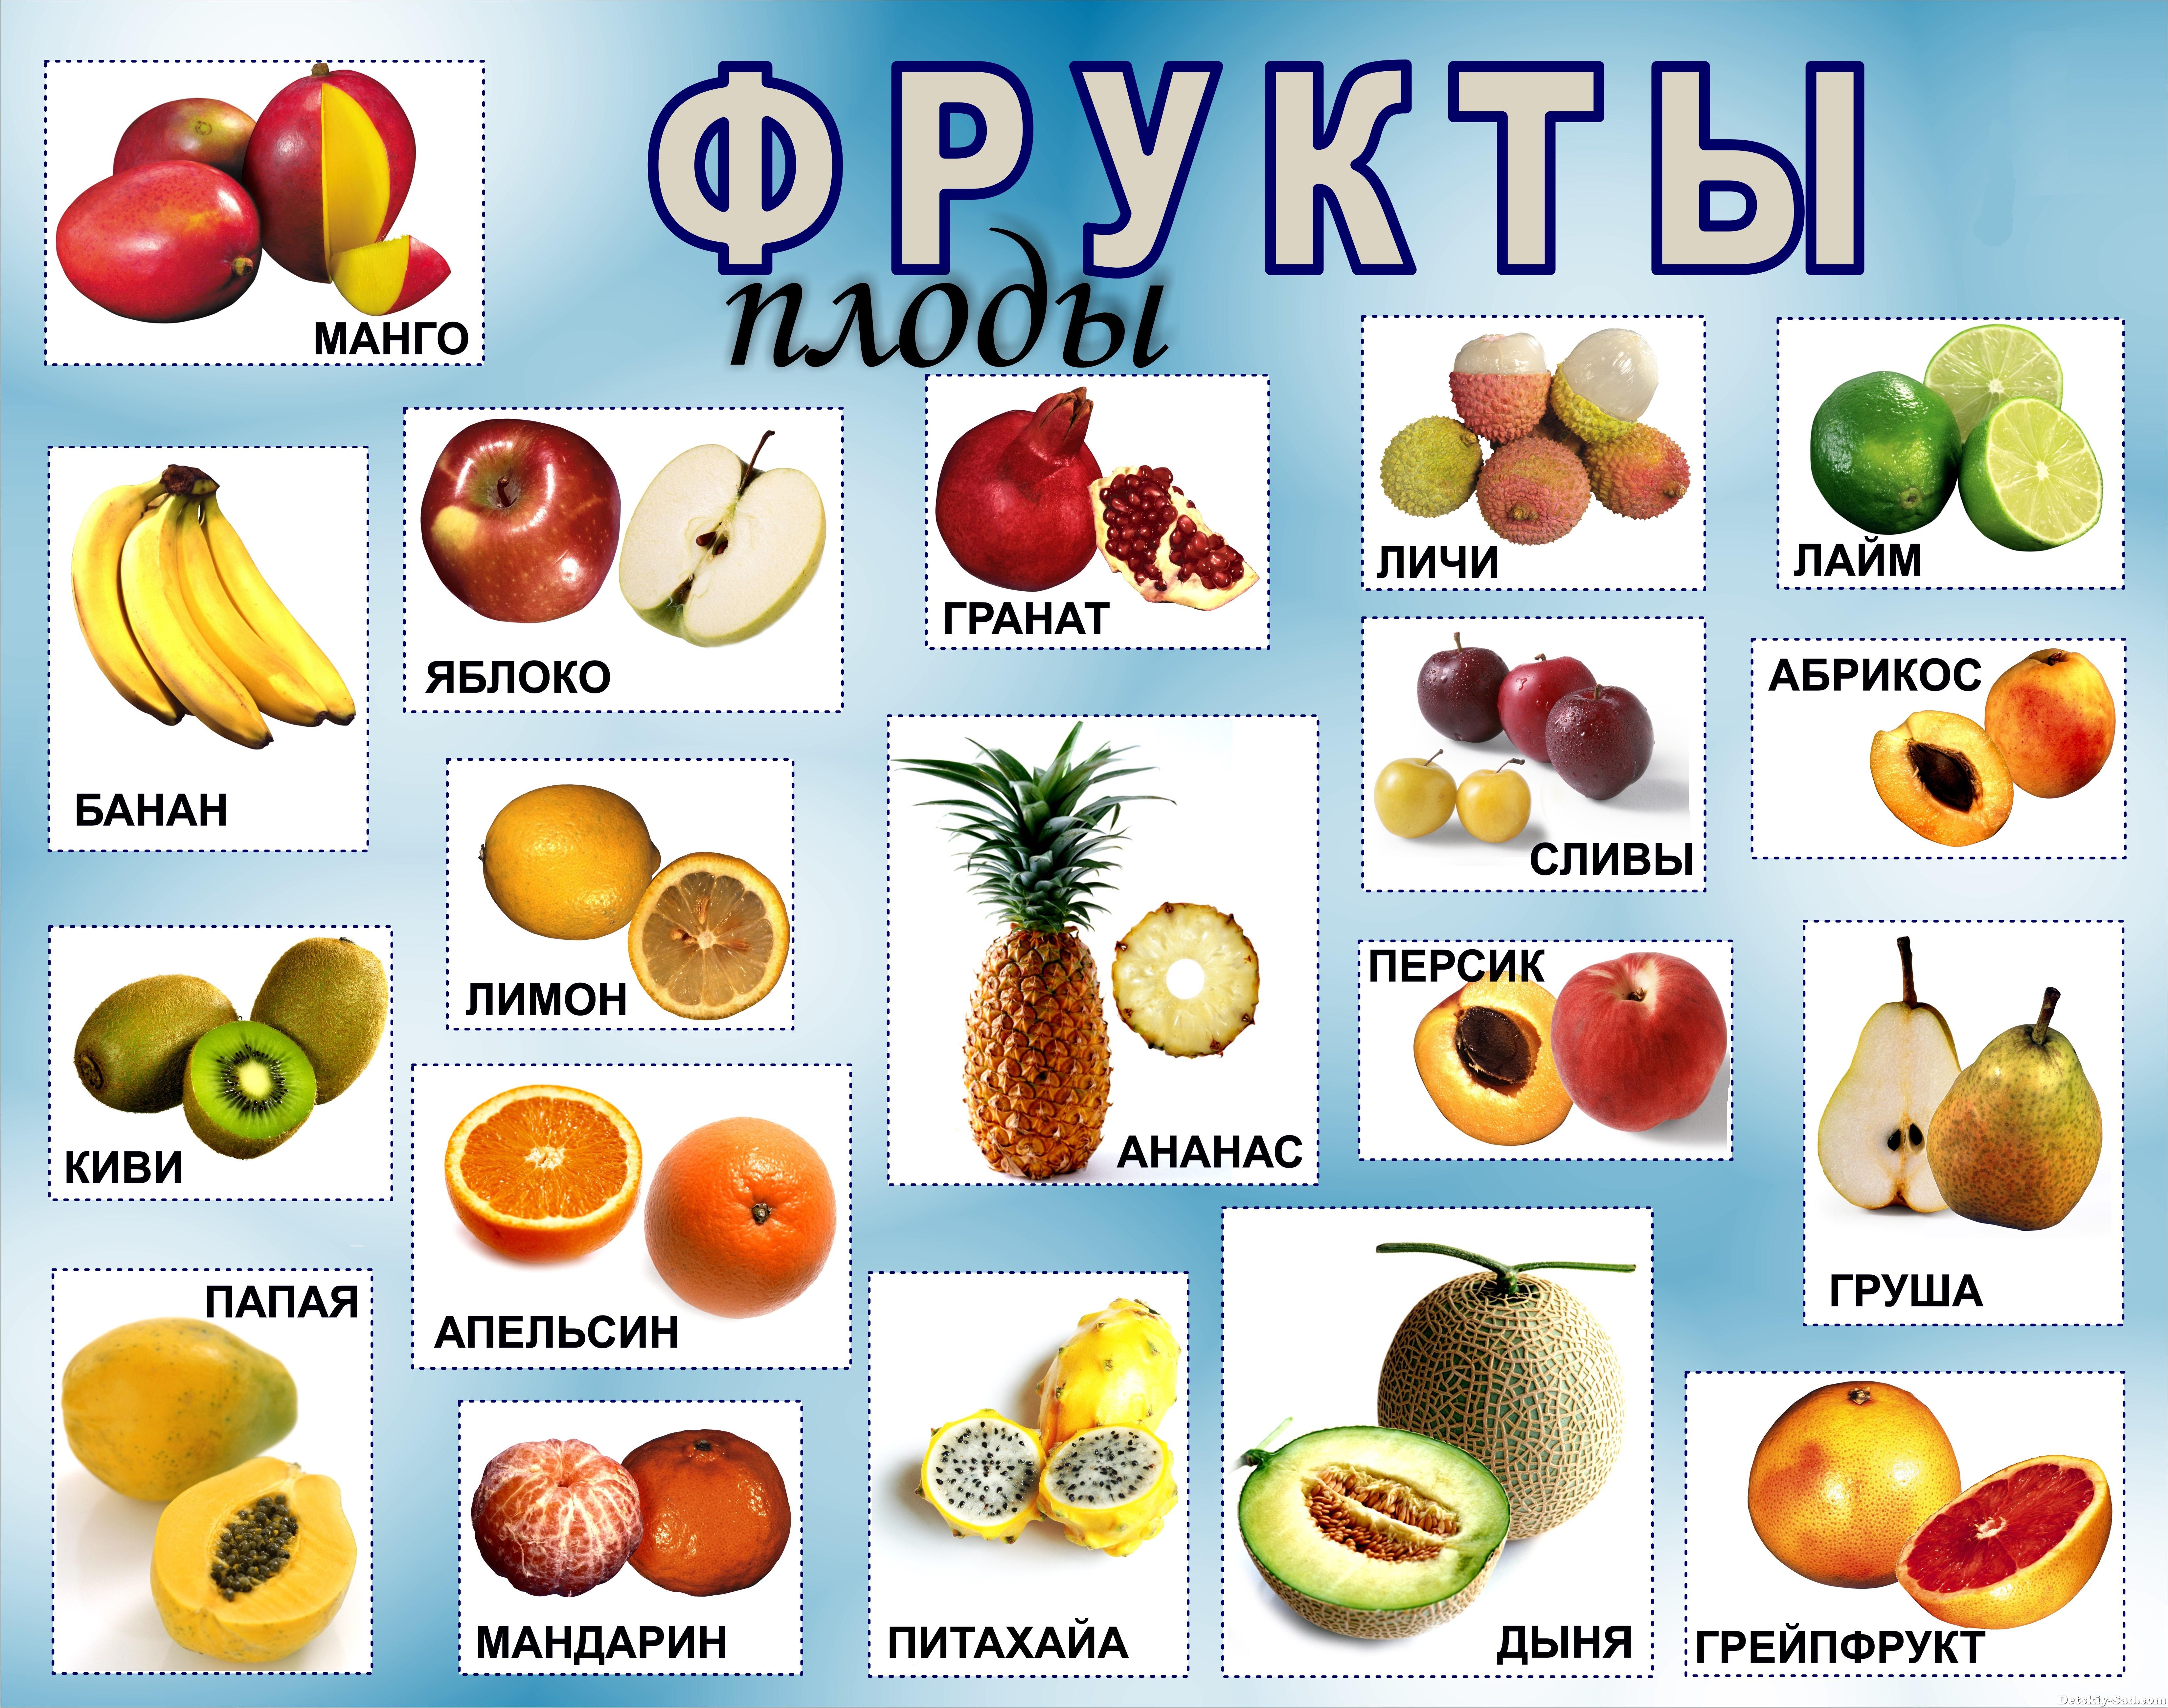 Нажмите на фрукт